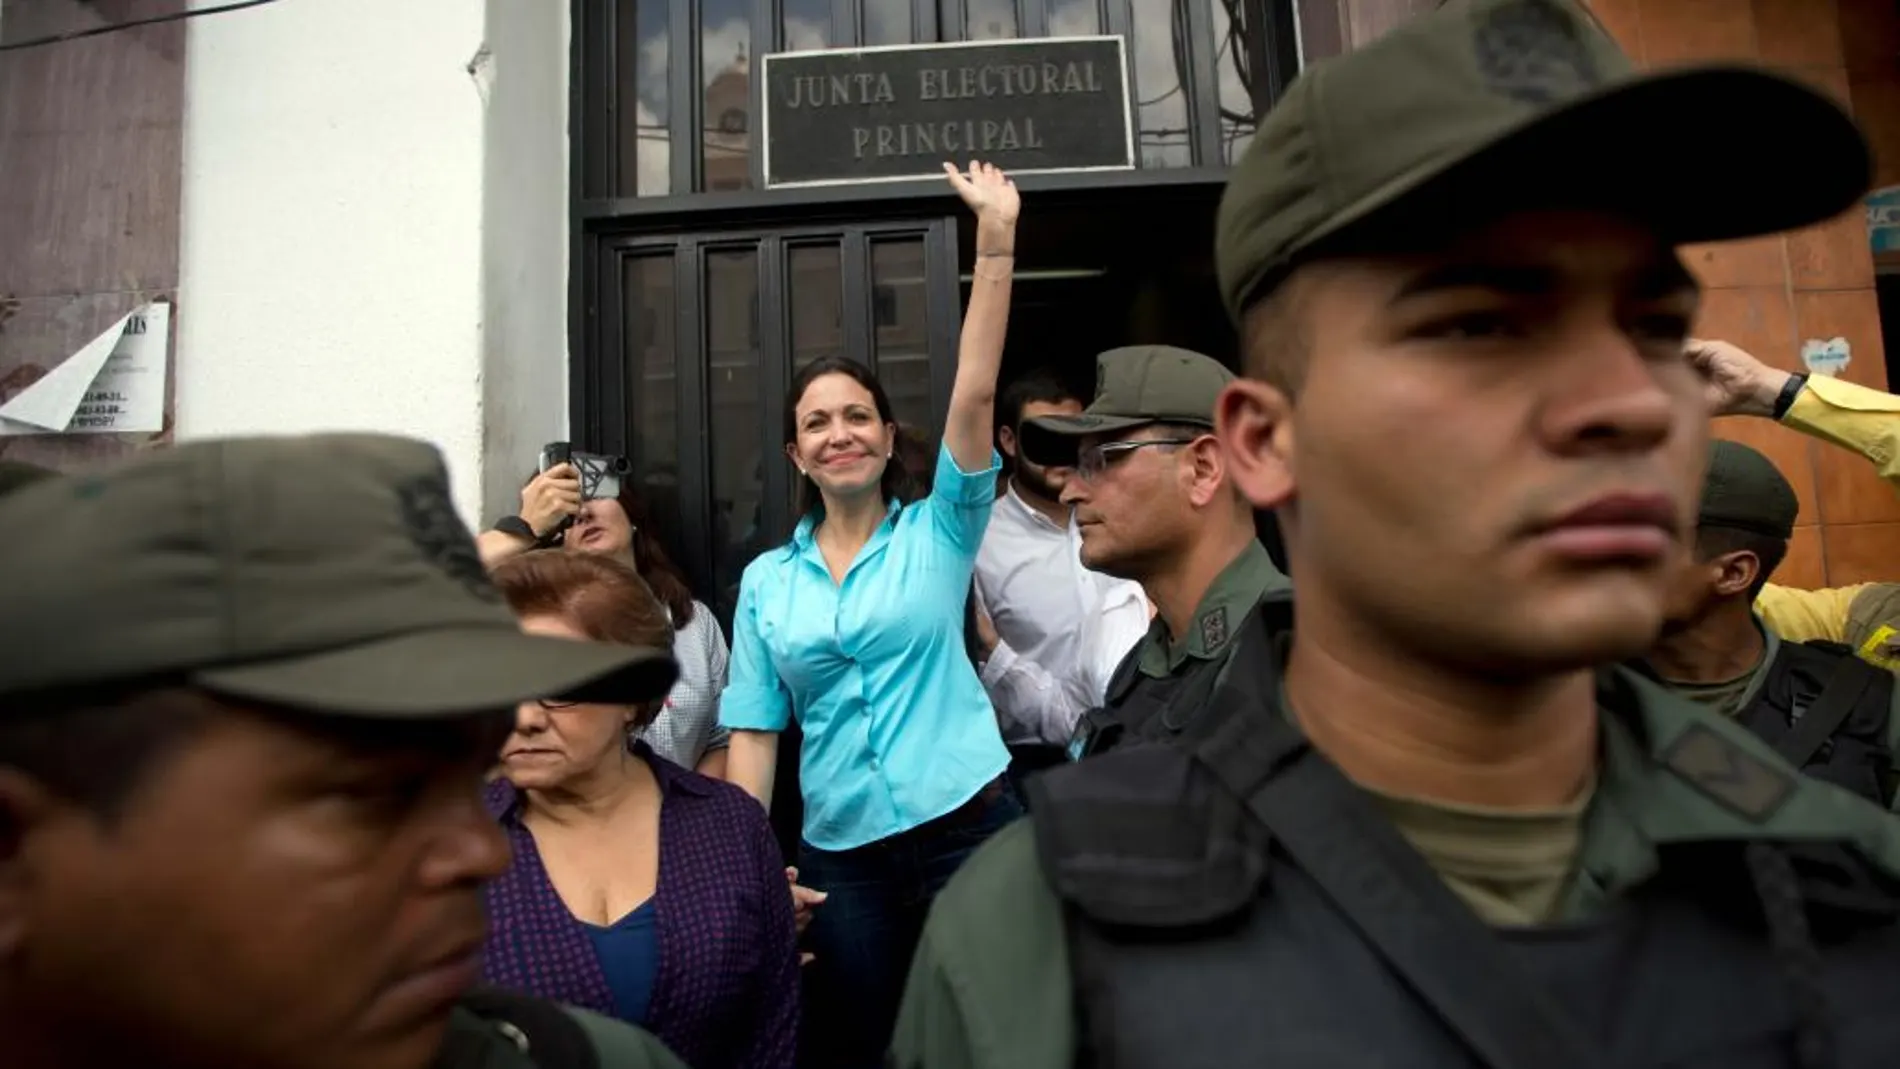 La exdiputada venezolana de la Asamblea Nacional (AN) María Corina Machado (c) sale de la sede de la Junta Electoral Principal